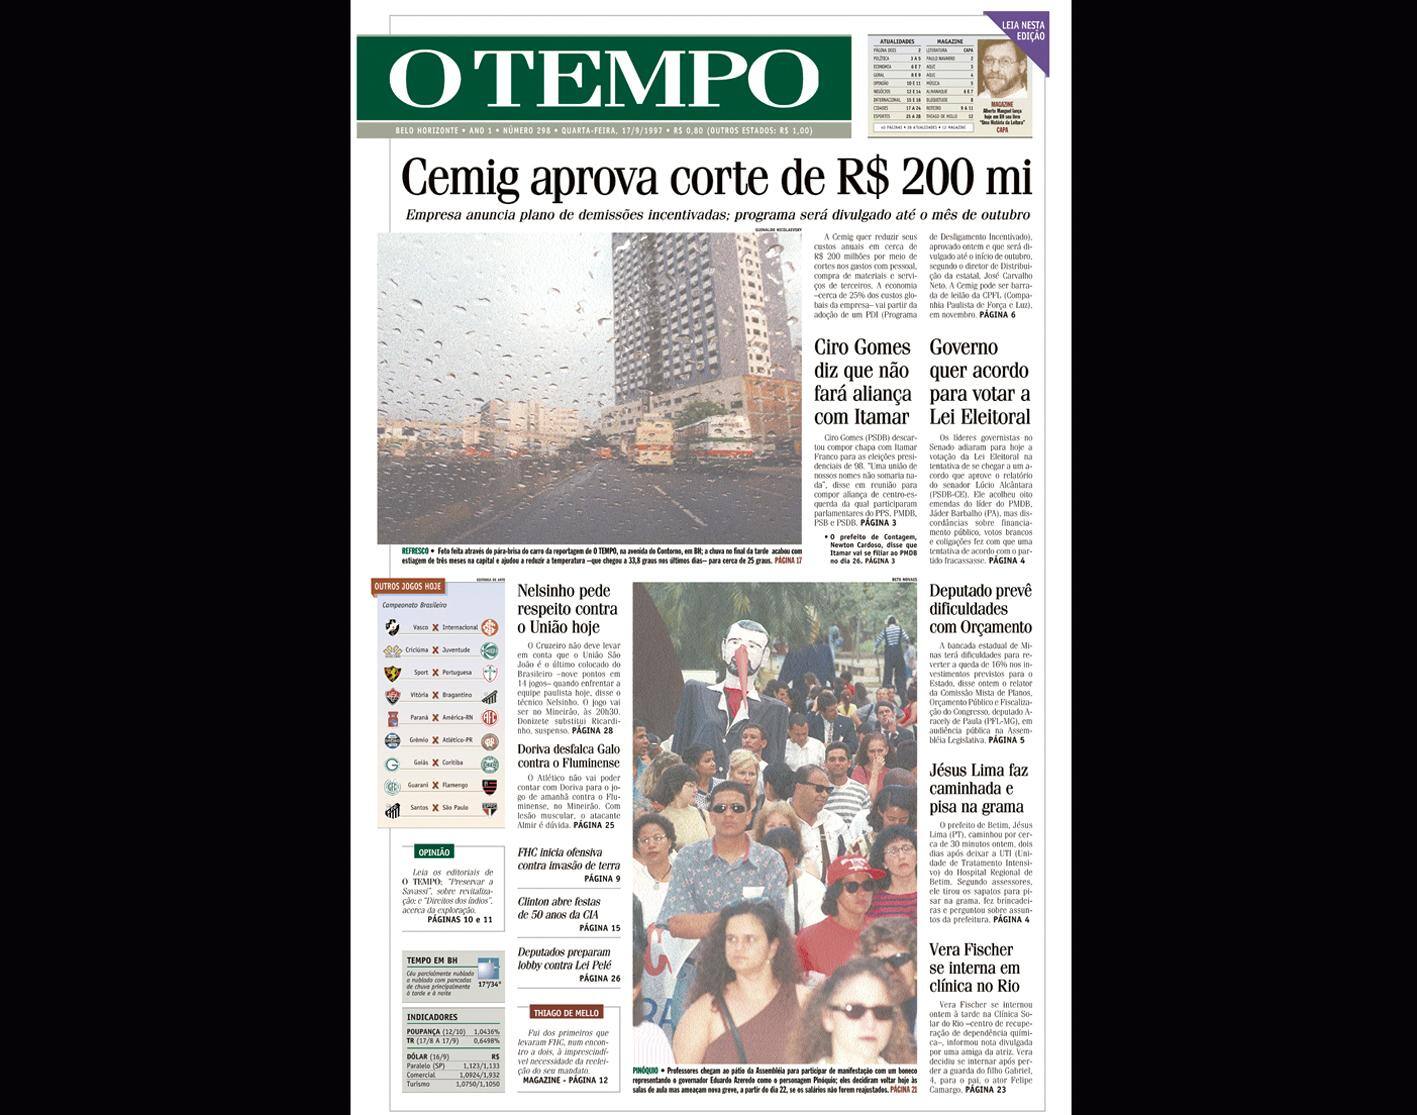 Capa do jornal O TEMPO no dia 17.9.1997; resgate do acervo marca as comemorações dos 25 anos da publicação